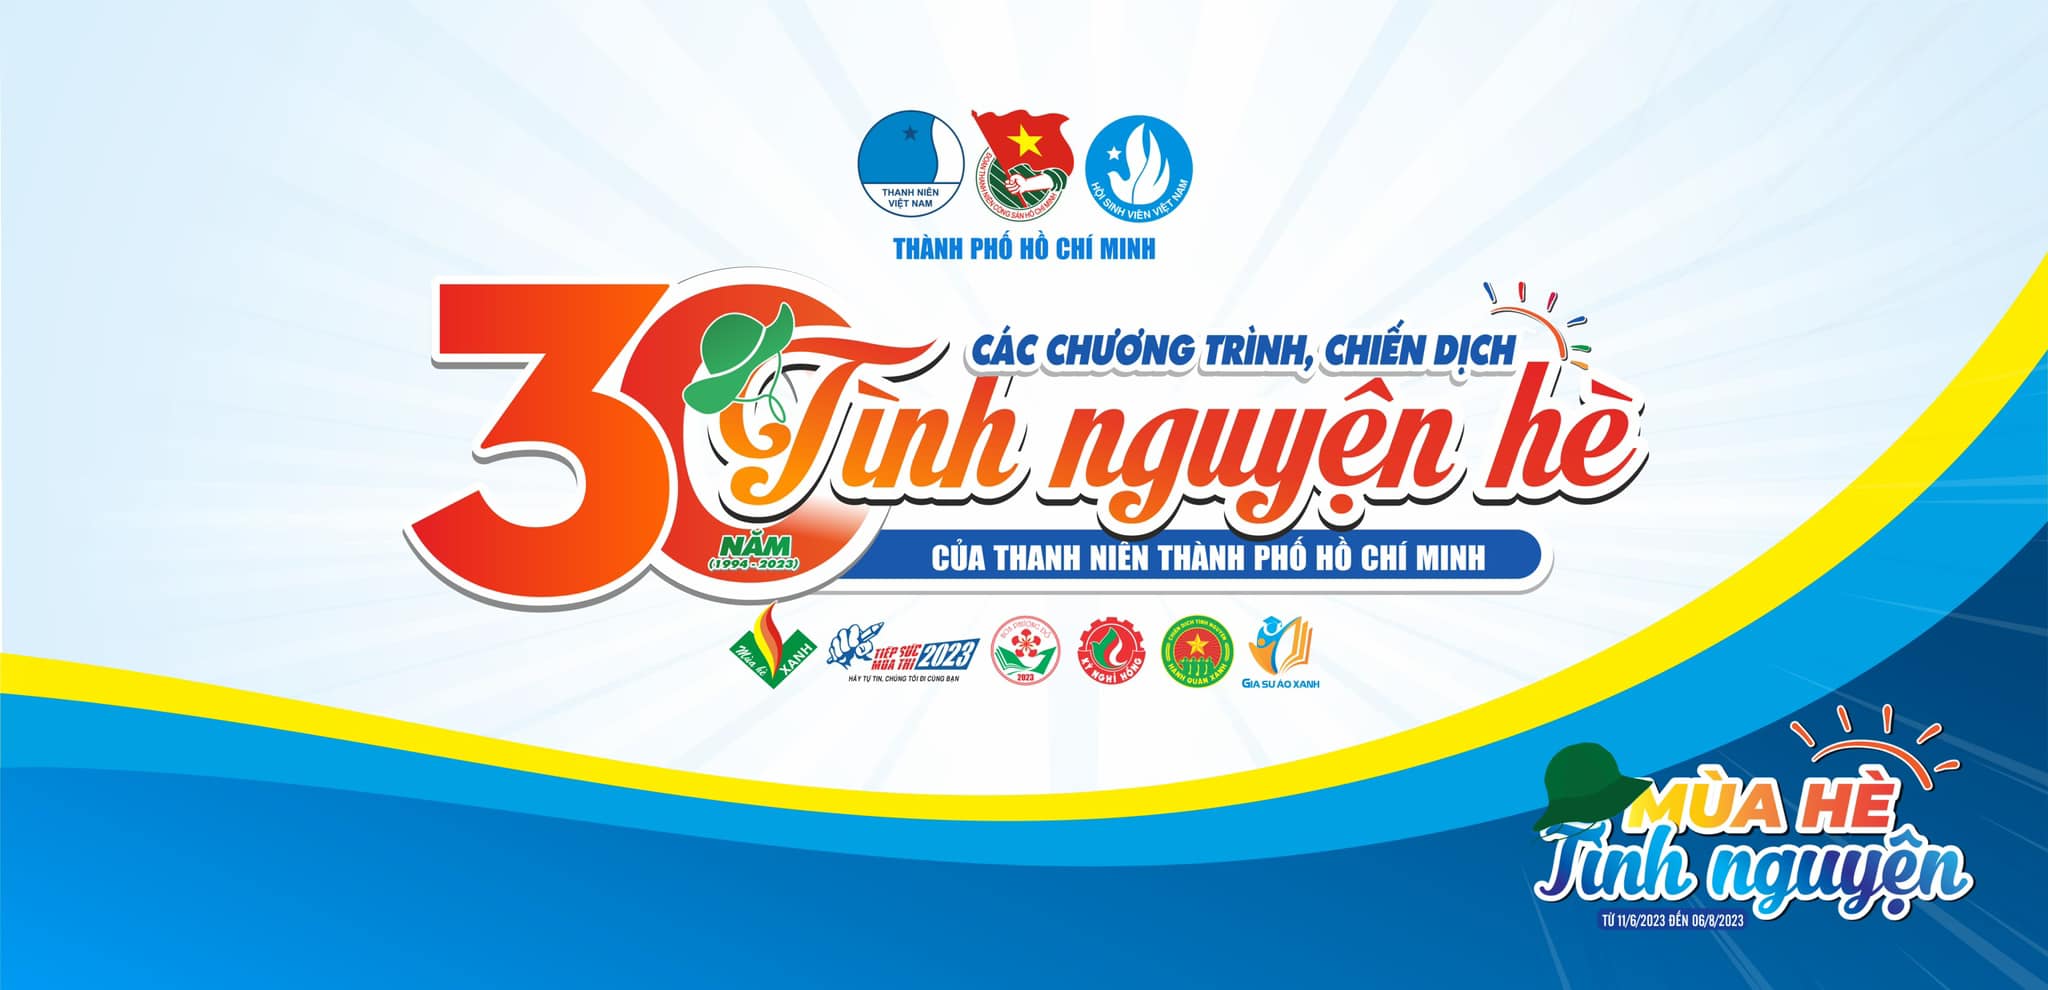 Chào mừng 30 năm các chương trình, chiến dịch tình nguyện hè của thanh niên thành phố Hồ Chí Minh (1994 – 2023) và các chương trình, chiến dịch tình nguyện hè năm 2023.